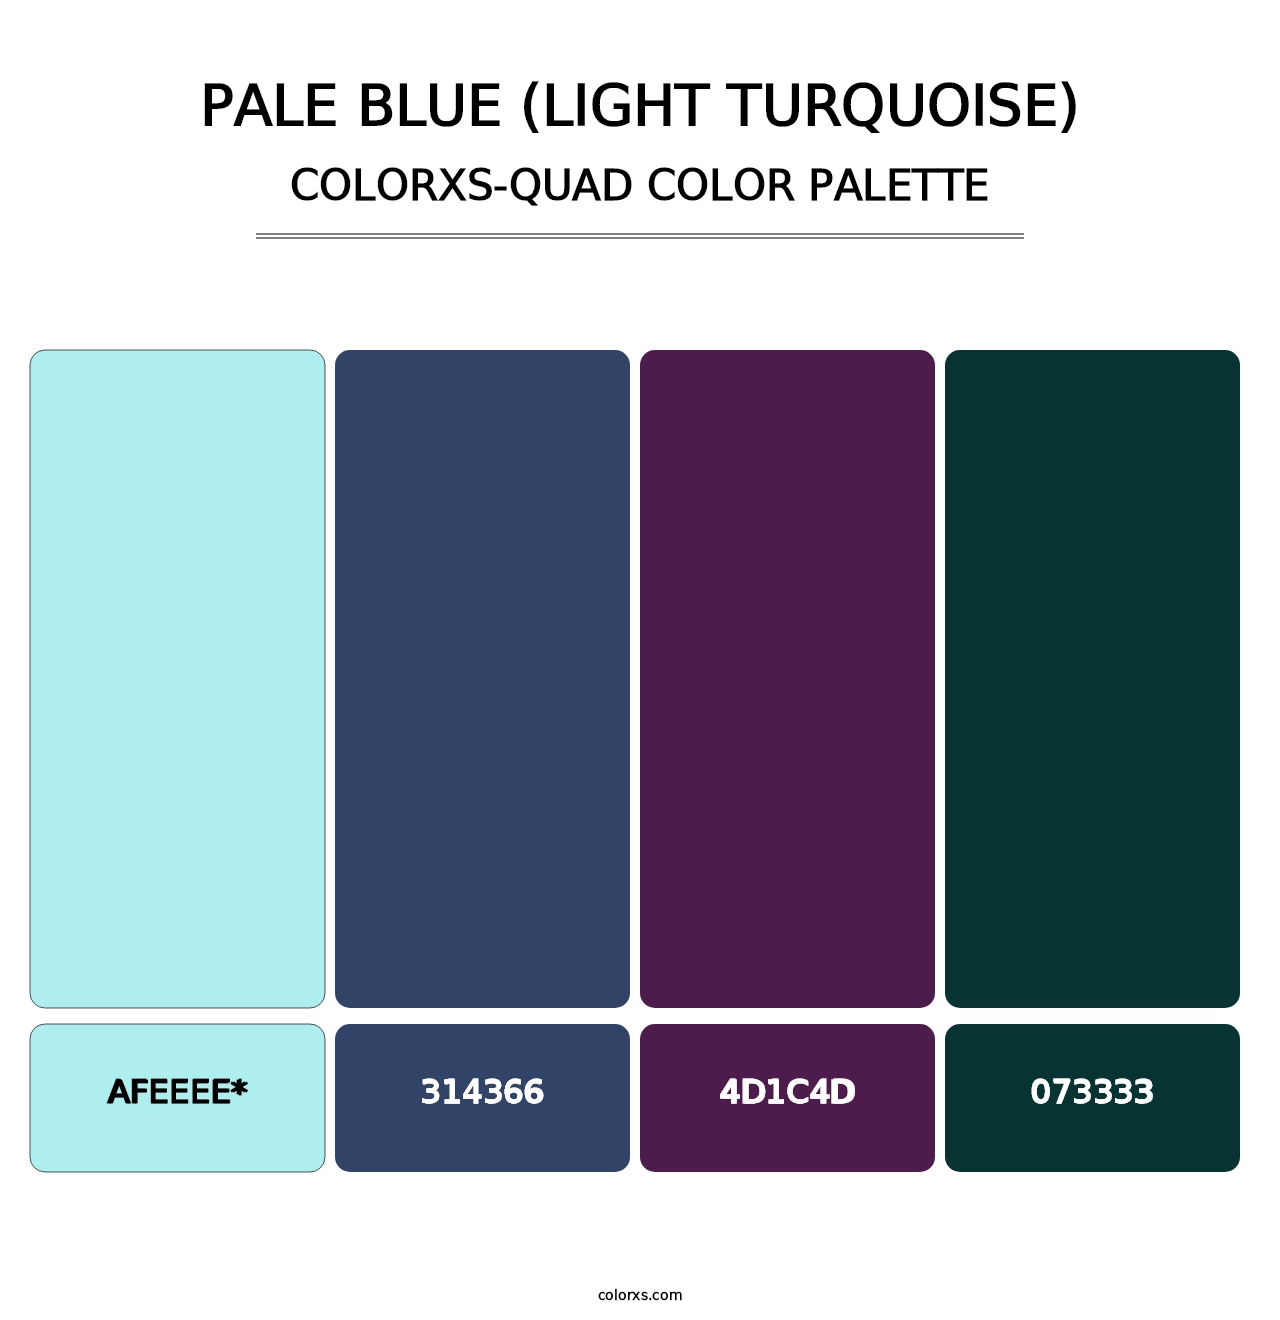 Pale Blue (Light Turquoise) - Colorxs Quad Palette